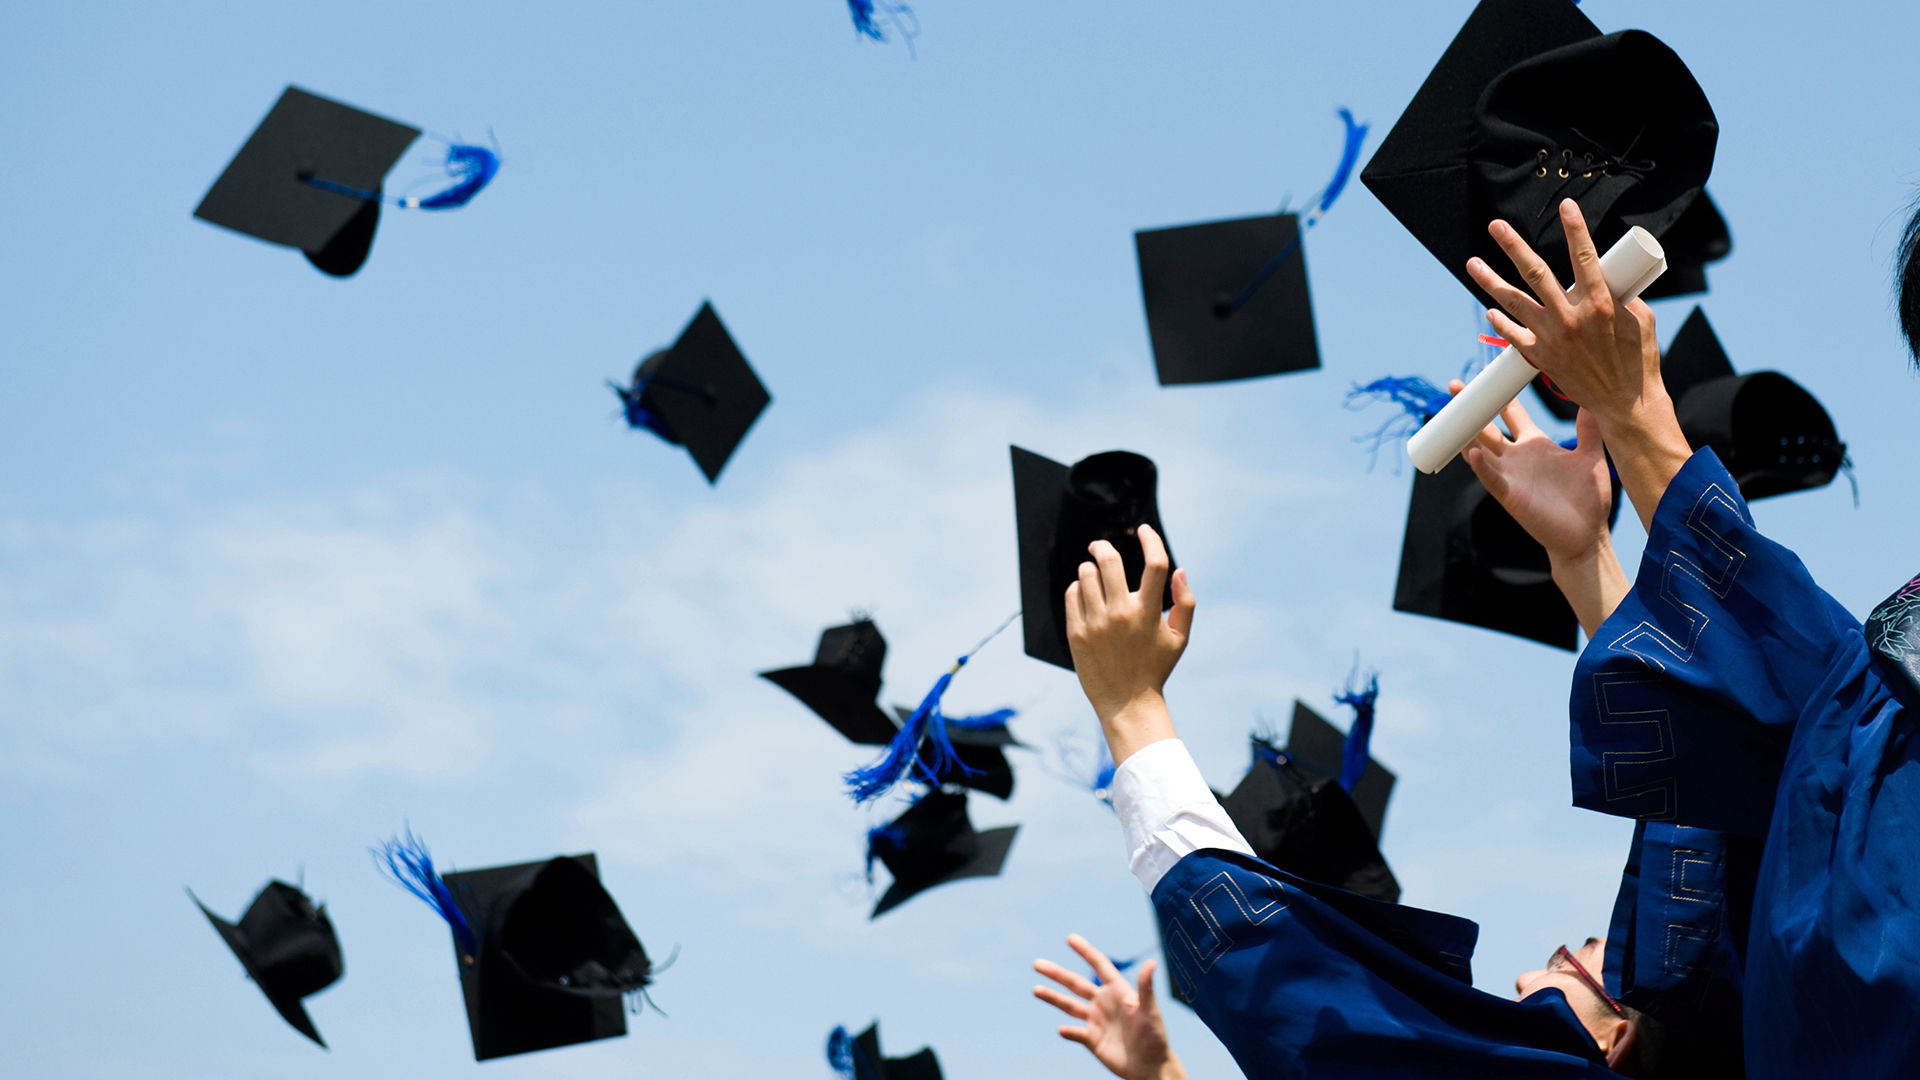 graduation-caps-in-air